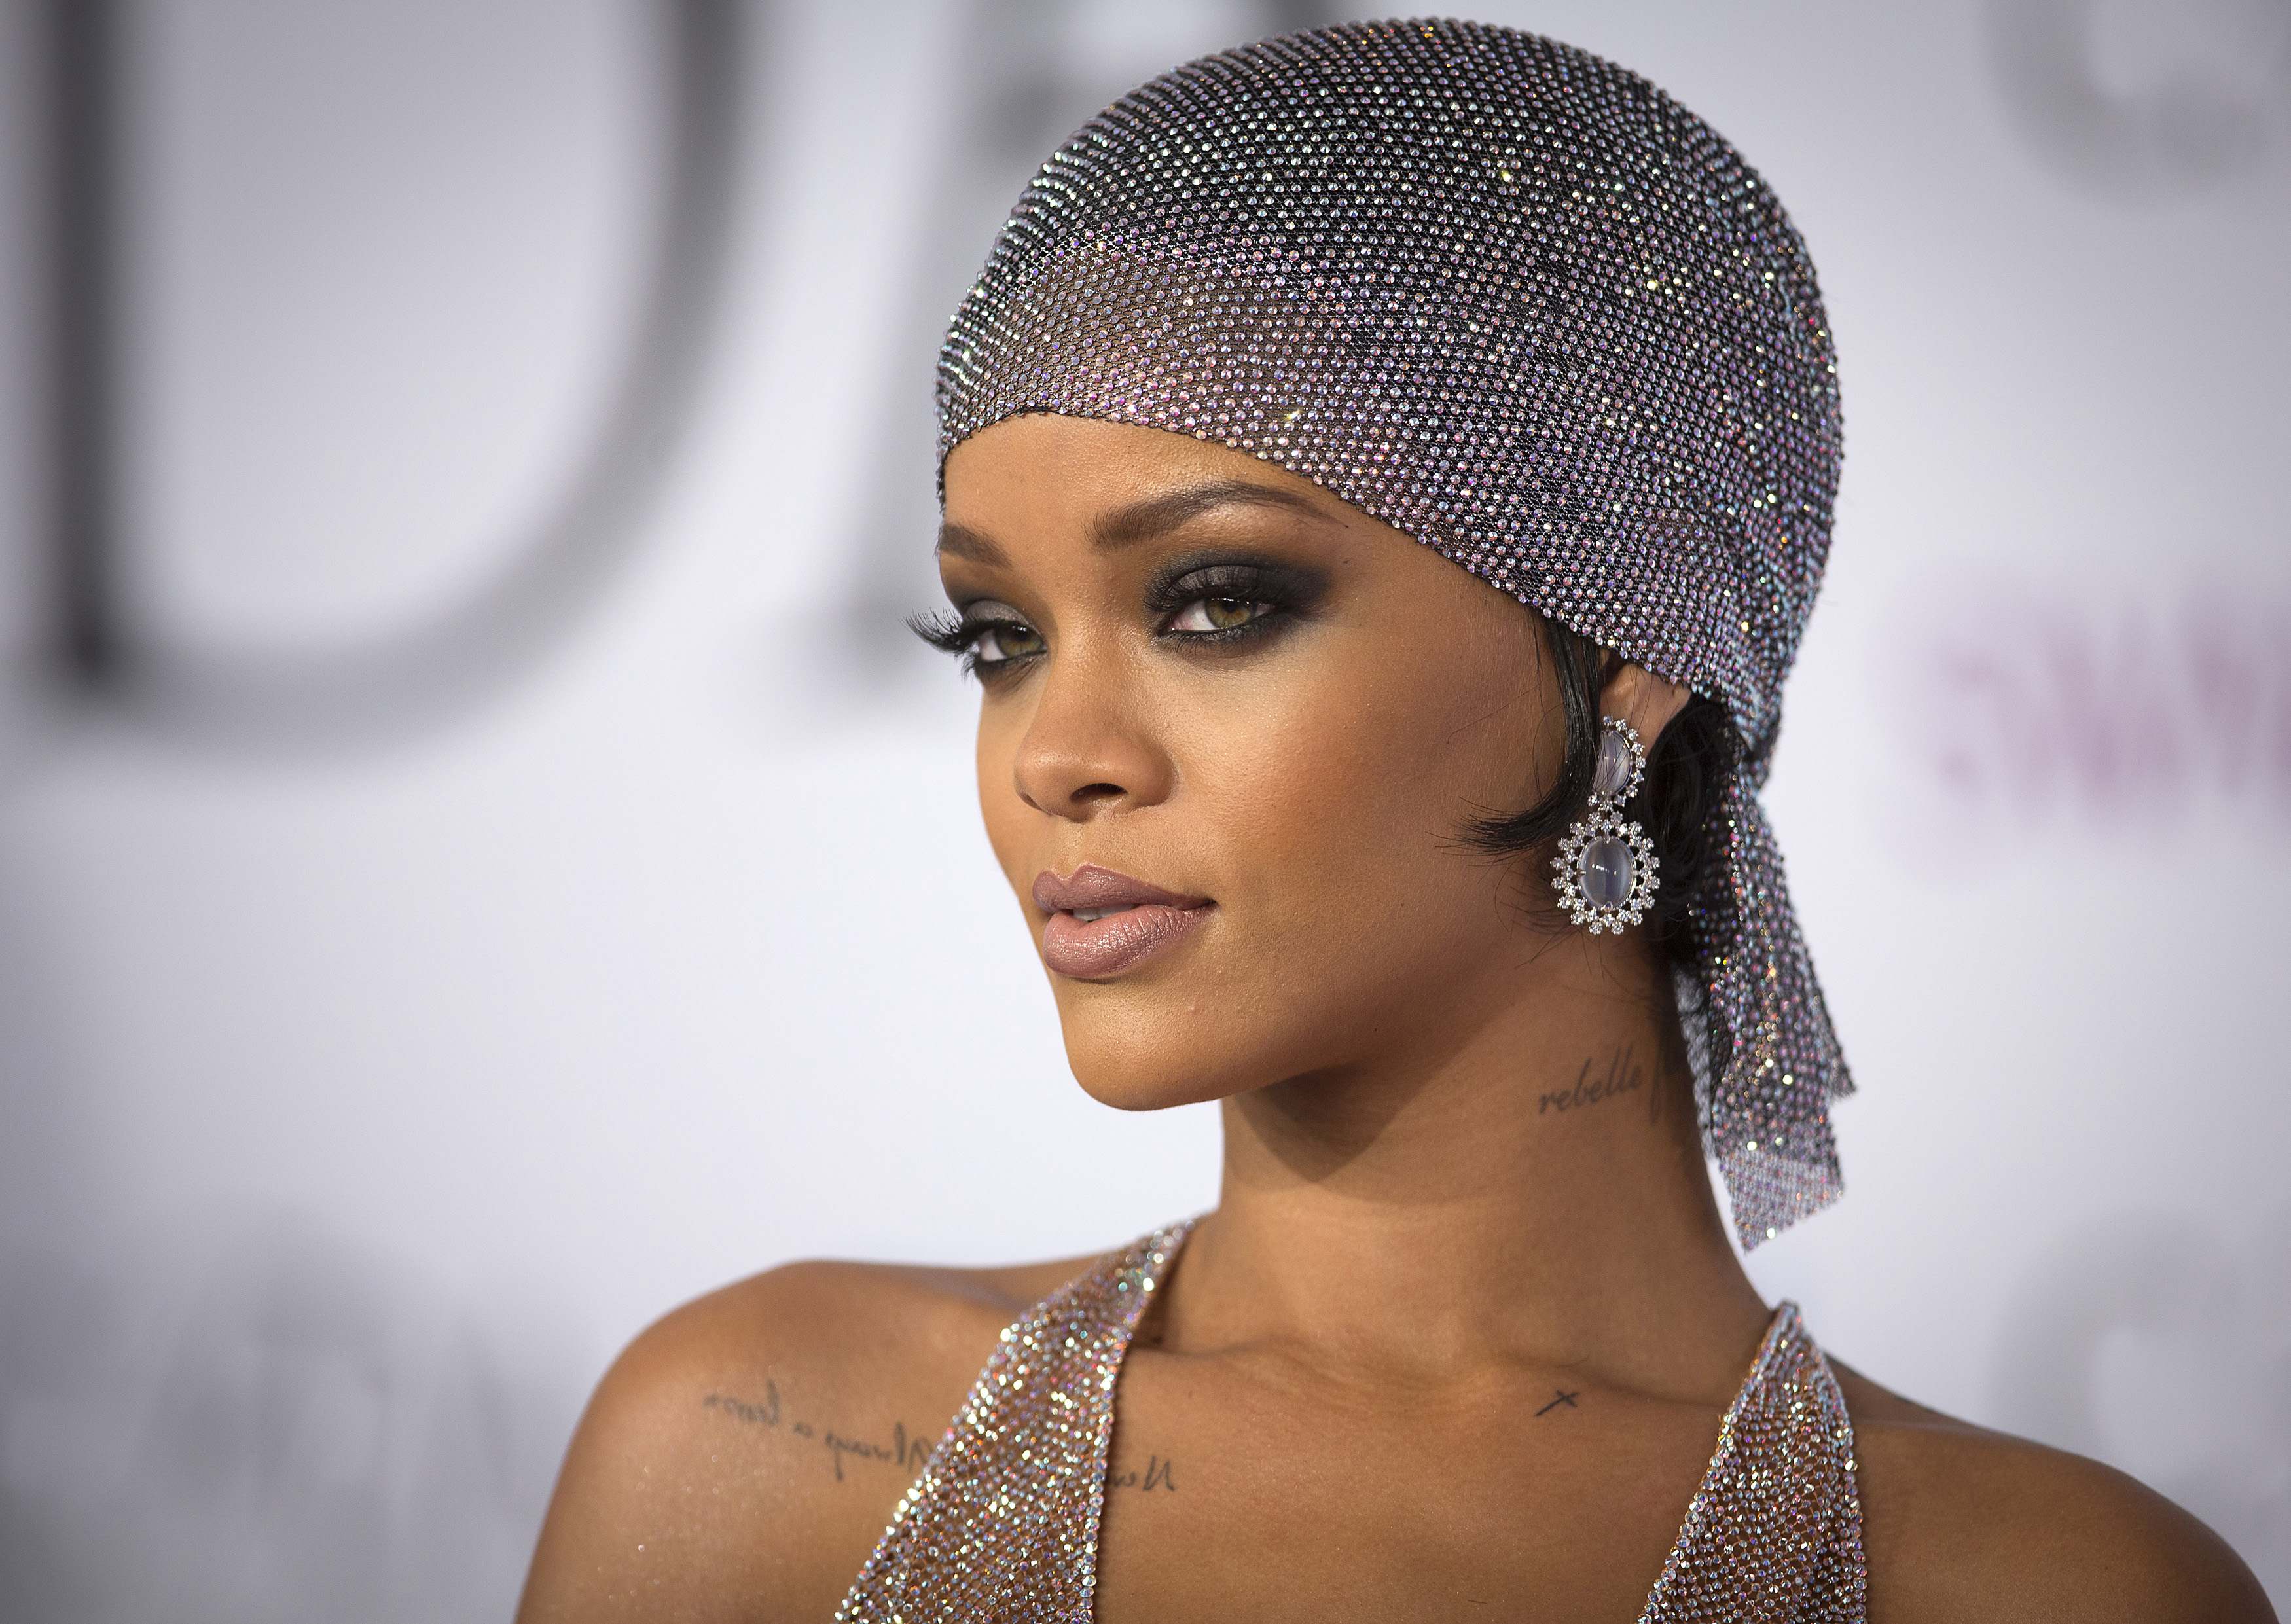 Rihanna muestra su figura en un atrevido vestido transparente (Fotos)